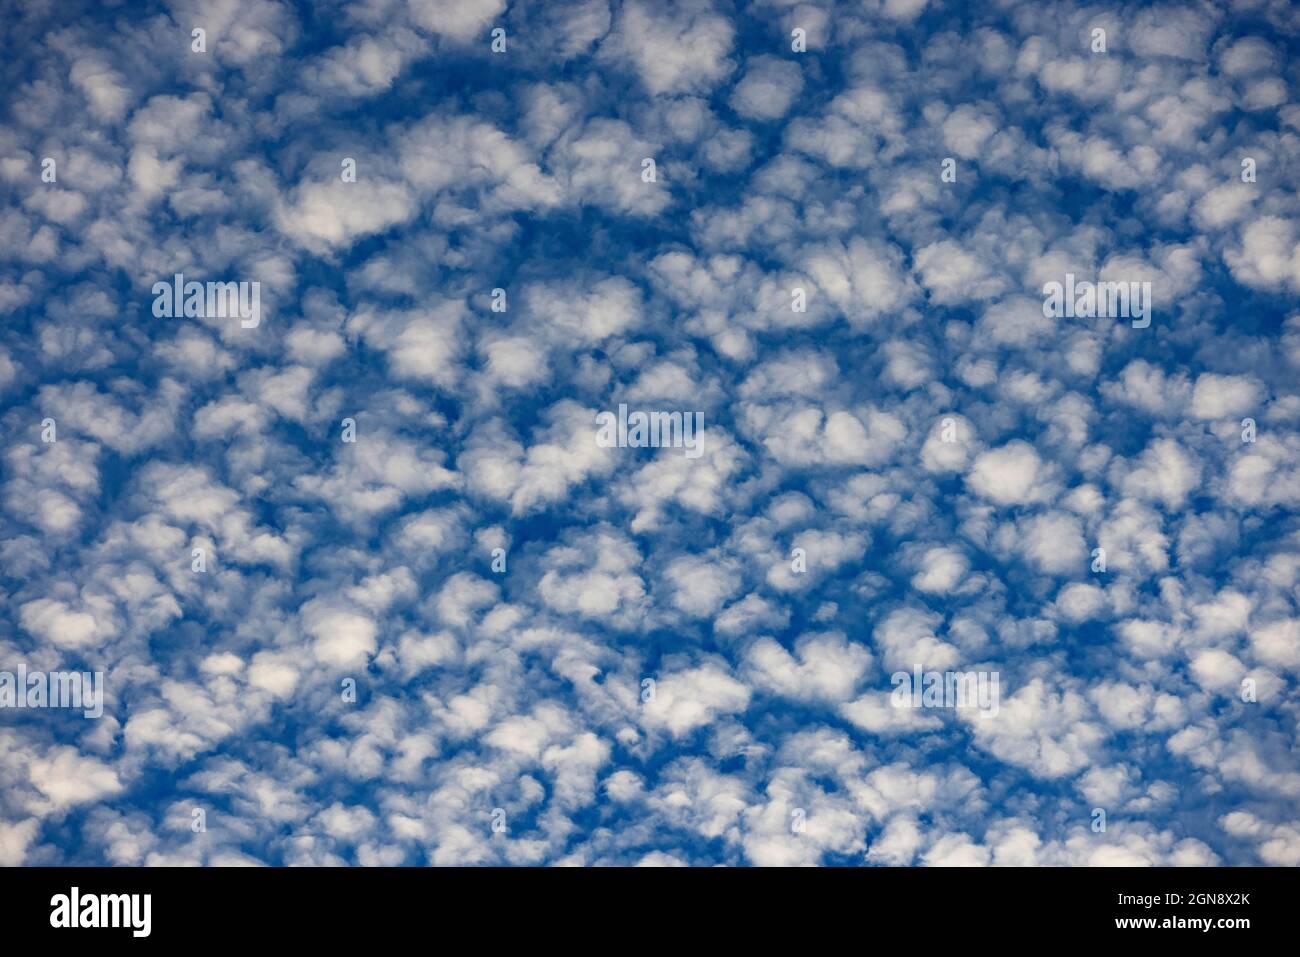 Cloudscape of altocumulus clouds Stock Photo